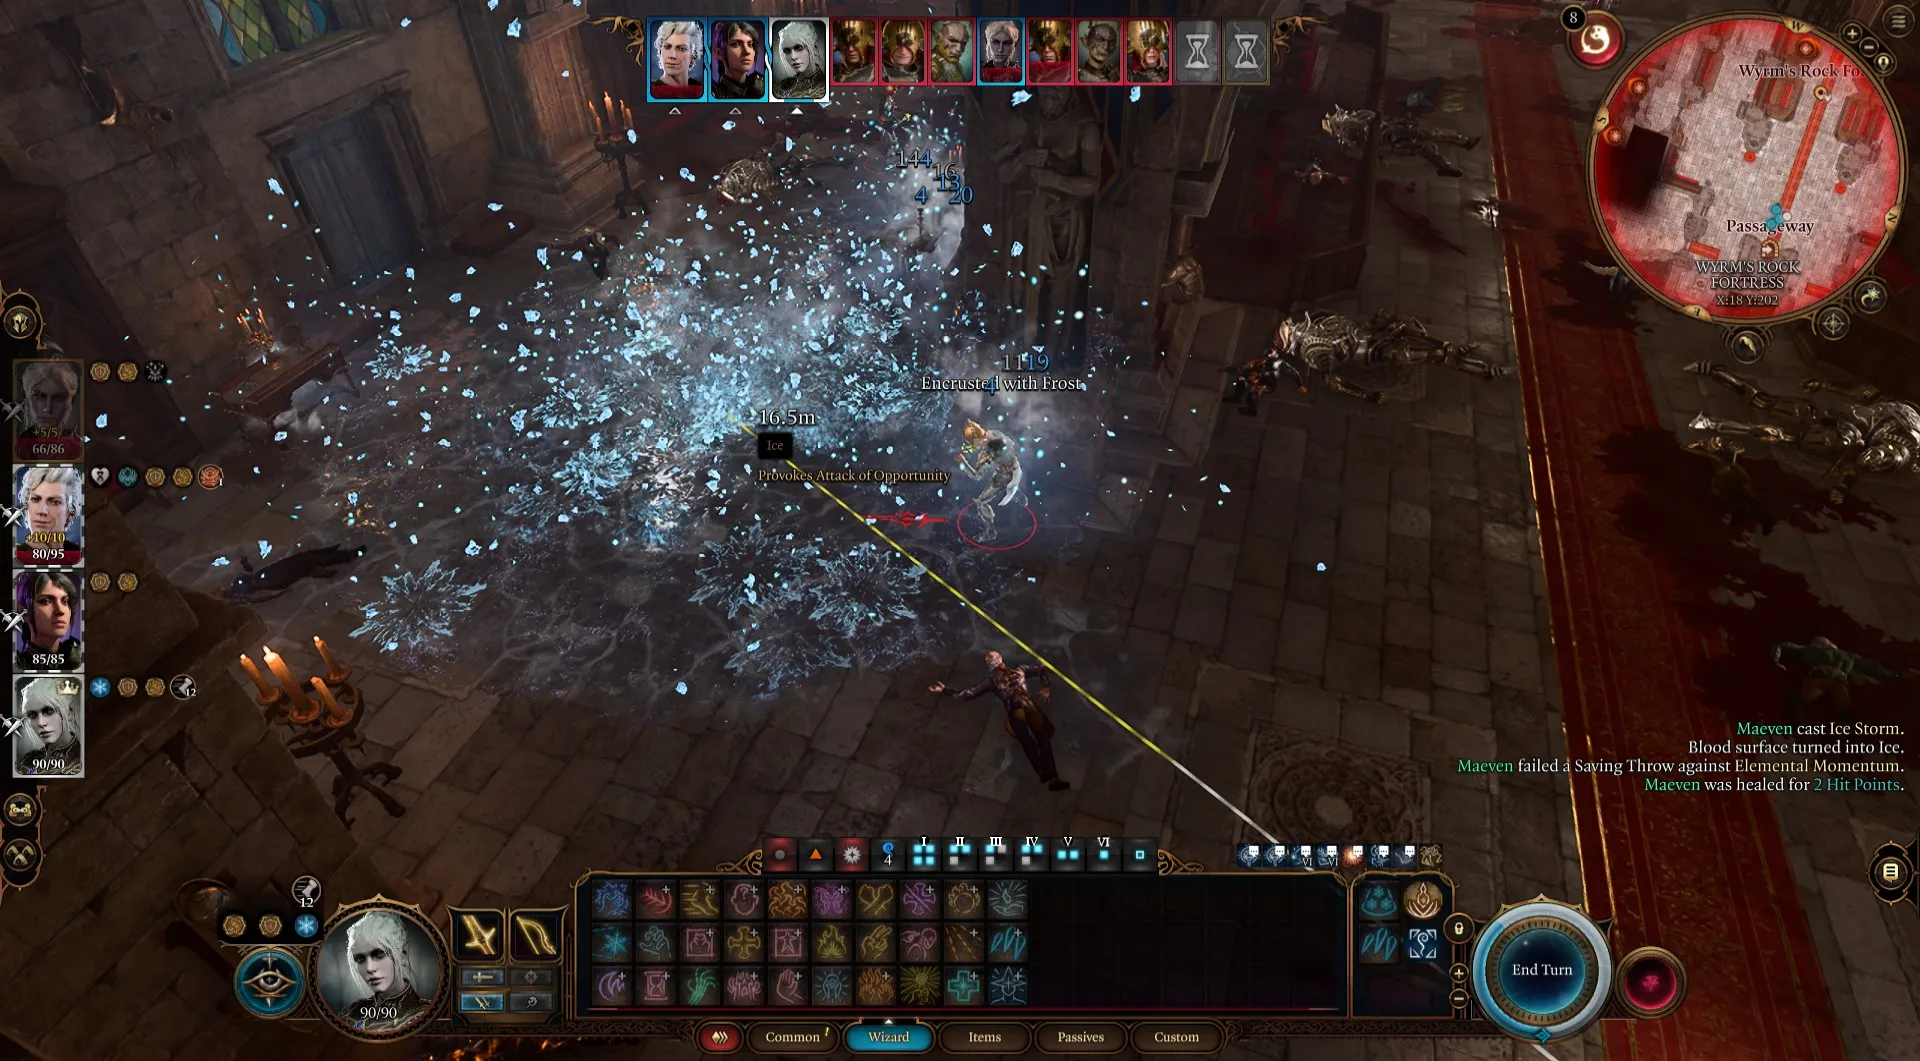 Control Wizard lancia Ice Storm per creare Effetto del Terreno in Baldur's Gate 3